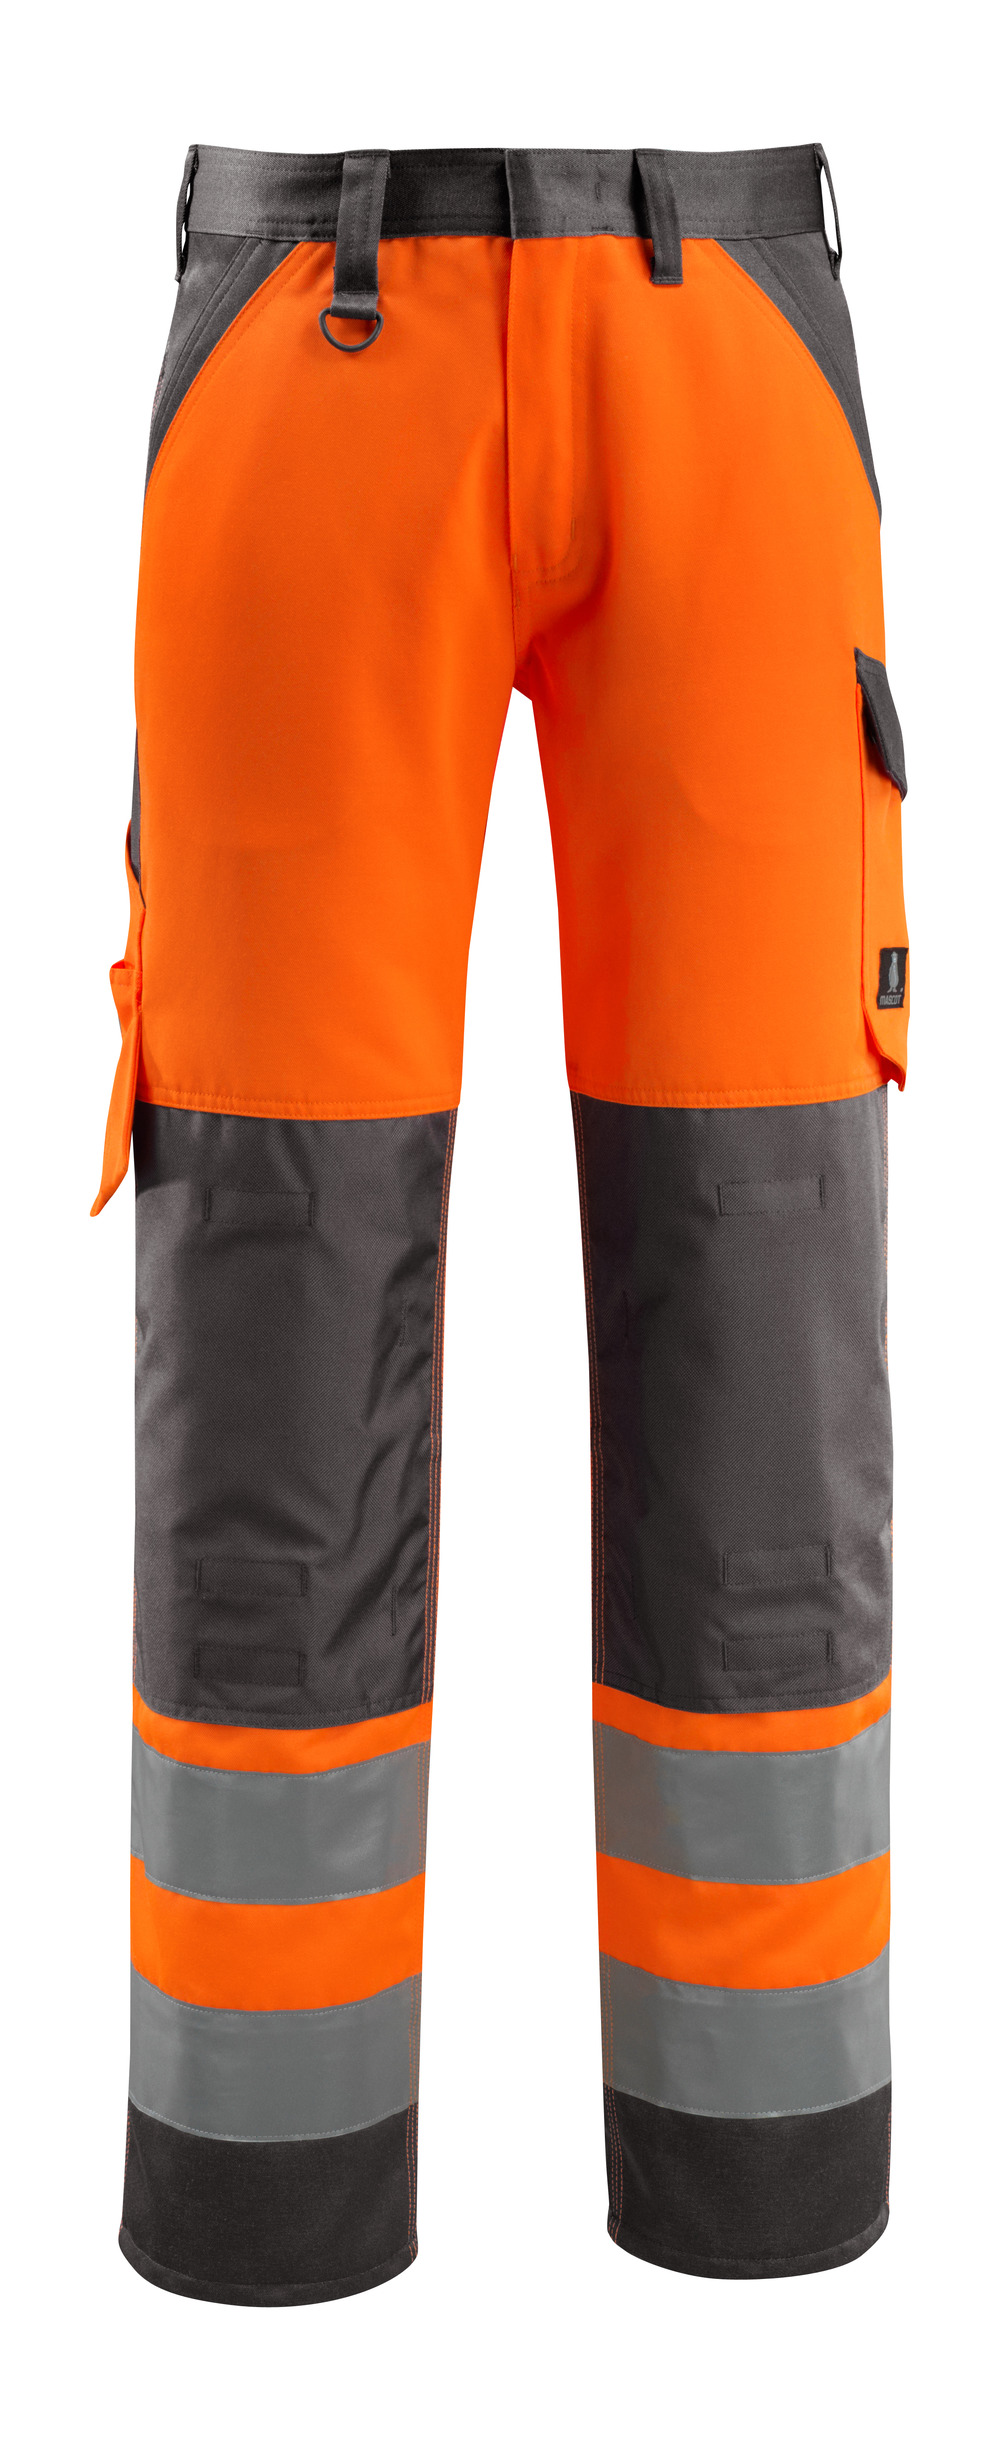 MASCOT-Warnschutz, Warn-Bund-Hose, Maitland,  90 cm, 285 g/m², orange/dunkelanthrazit

